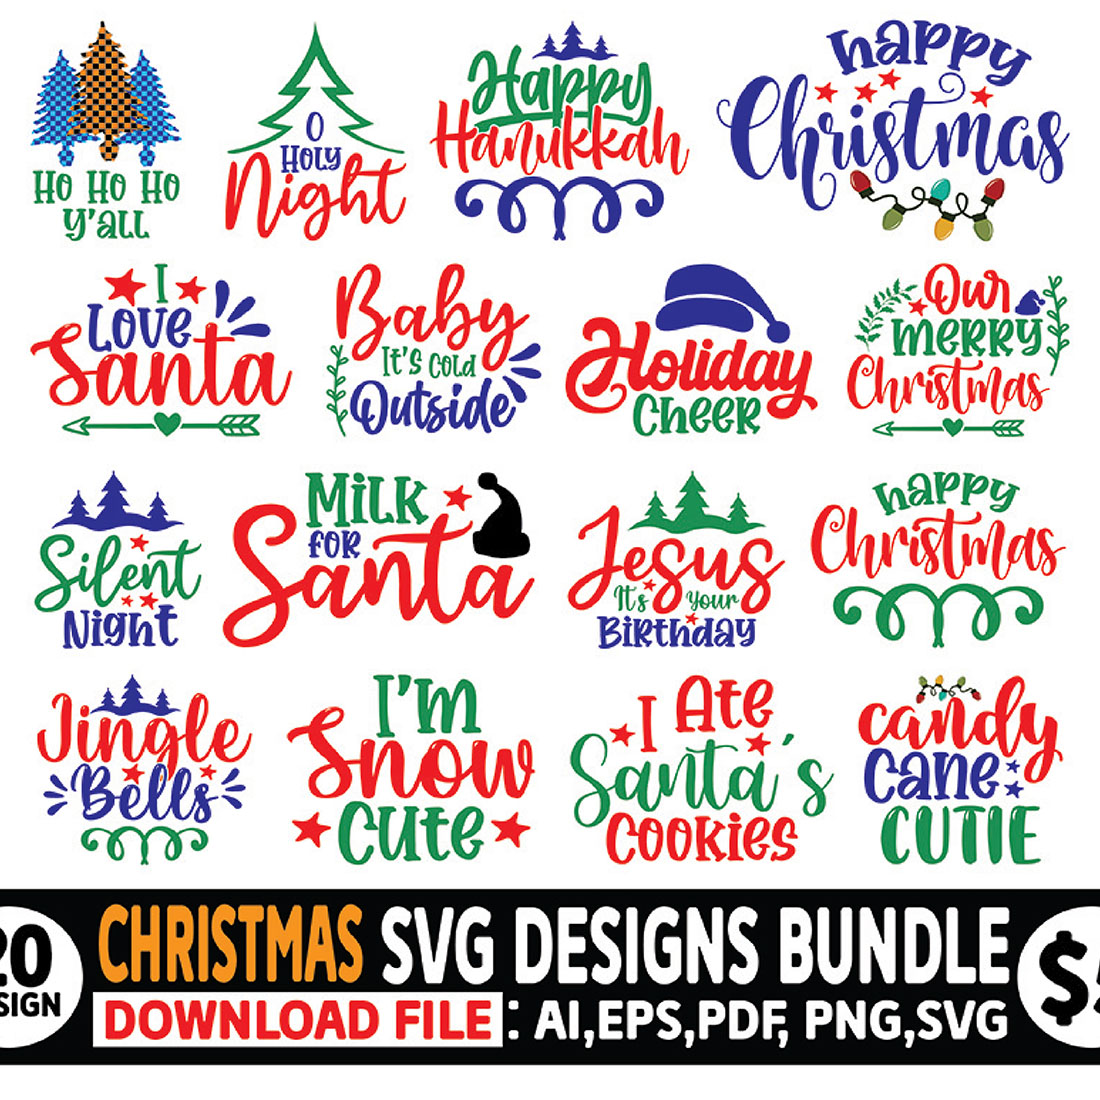 Christmas Bell Illustration in Illustrator, SVG, JPG, EPS, PNG - Download